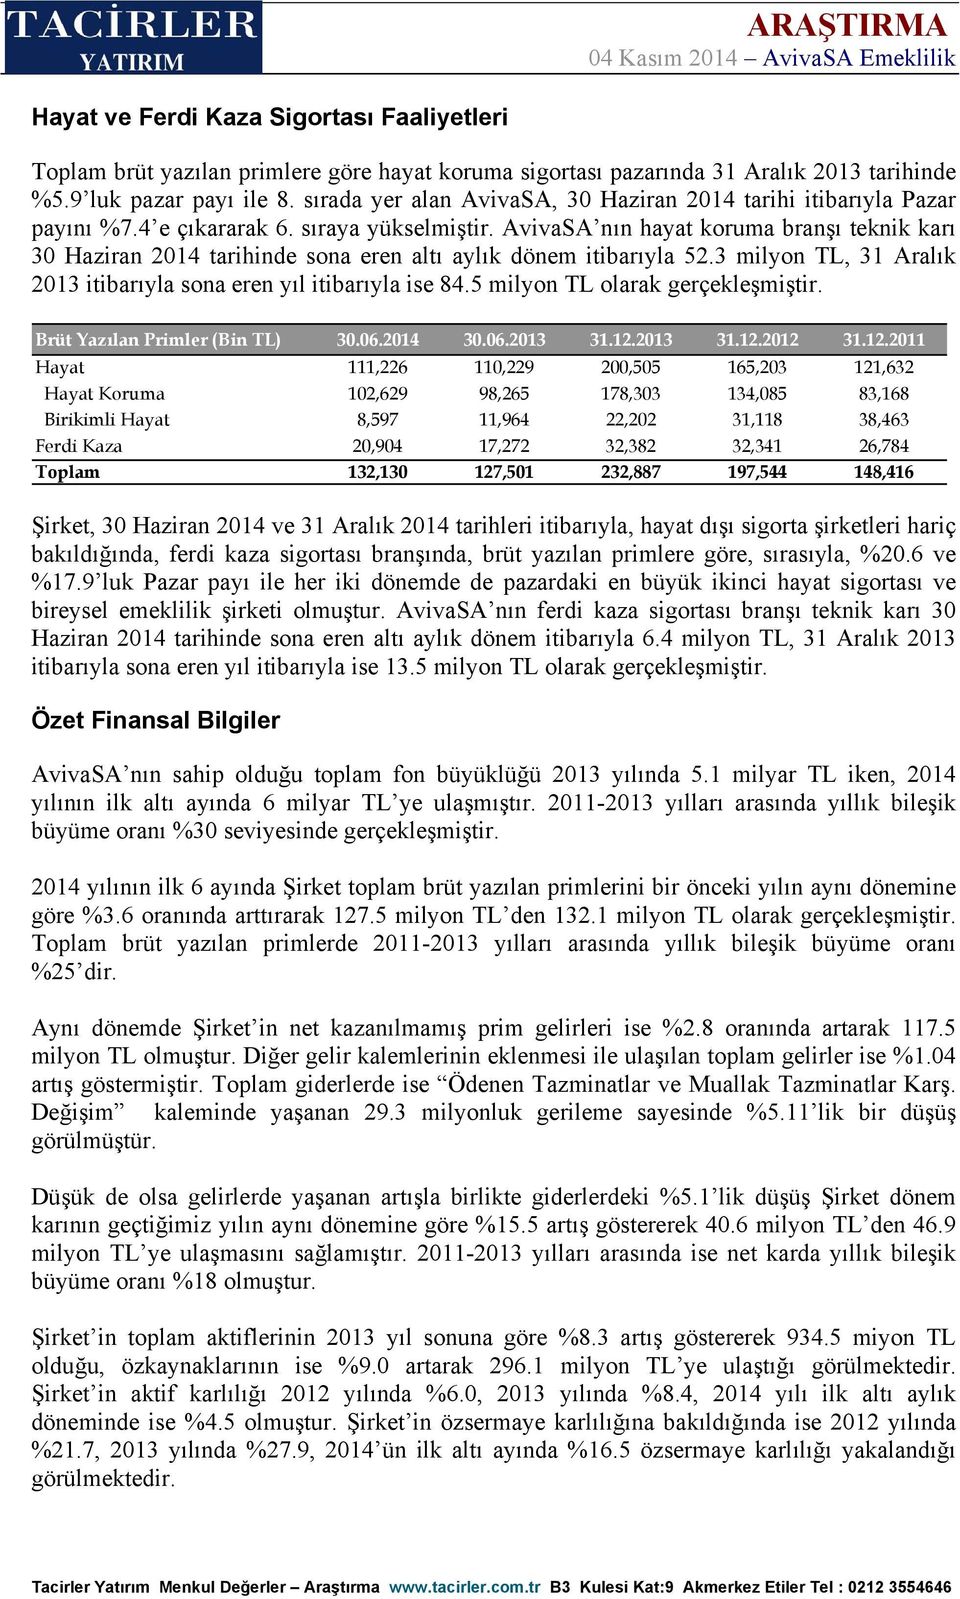 AvivaSA nın hayat koruma branşı teknik karı 30 Haziran 2014 tarihinde sona eren altı aylık dönem itibarıyla 52.3 milyon TL, 31 Aralık 2013 itibarıyla sona eren yıl itibarıyla ise 84.